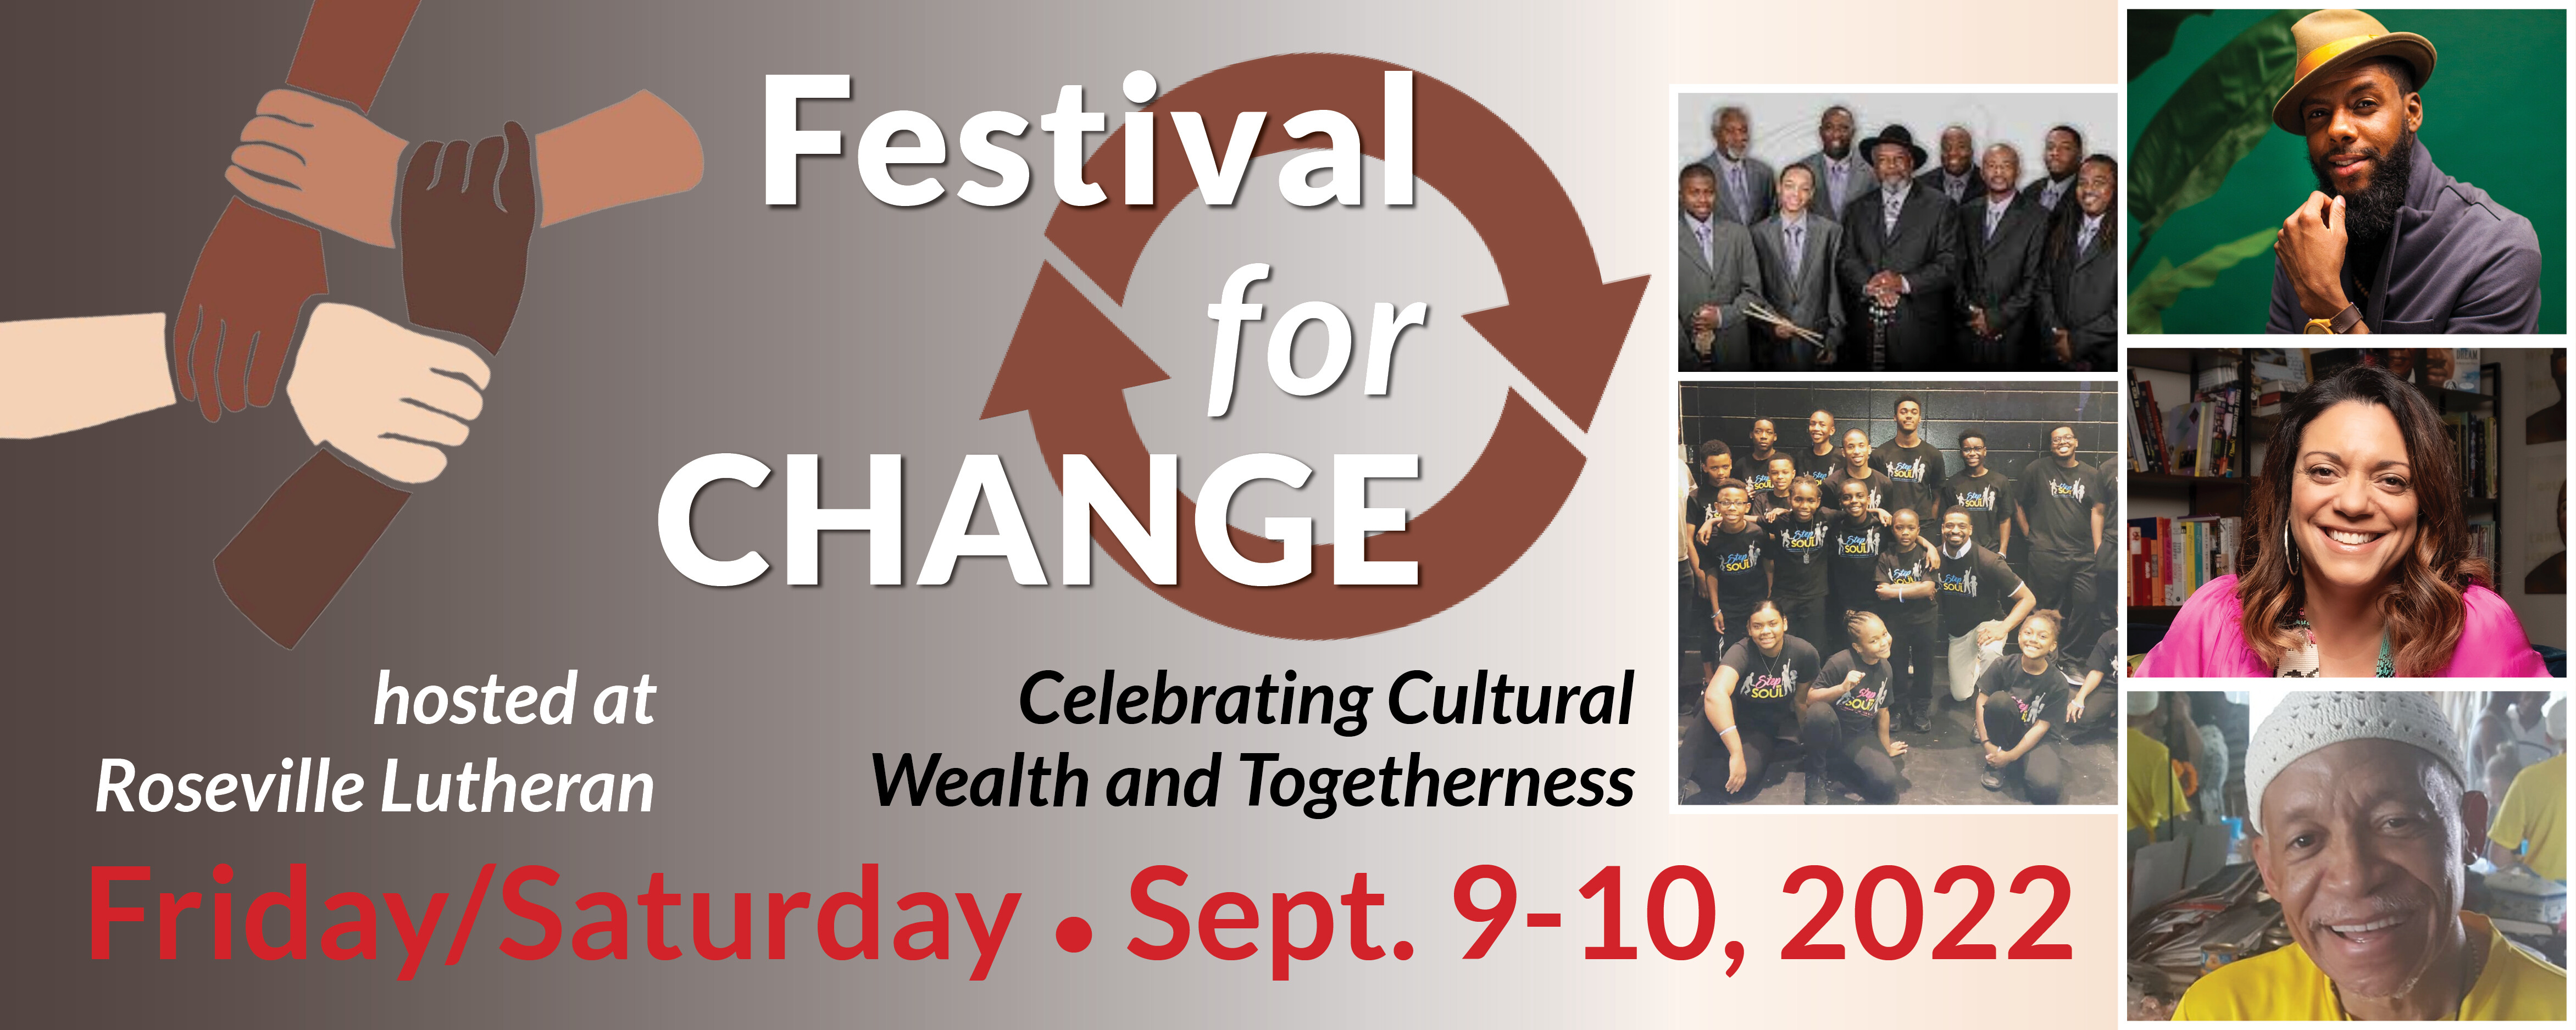 Festival for Change | Roseville Lutheran Church